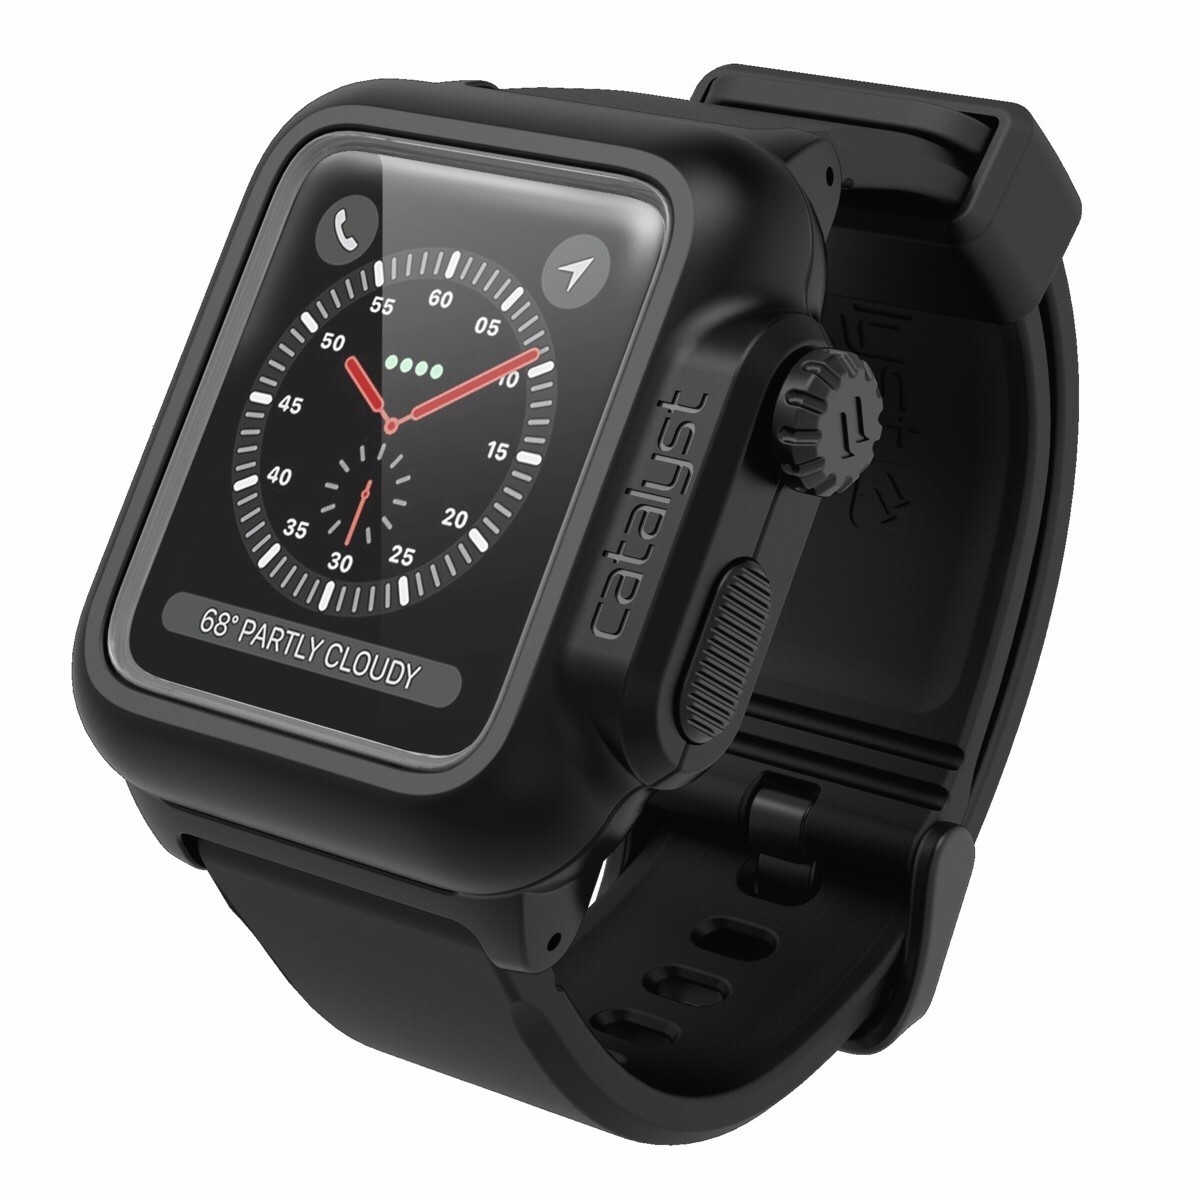 Catalyst waterproof Apple Watch 2/3 42mm case black